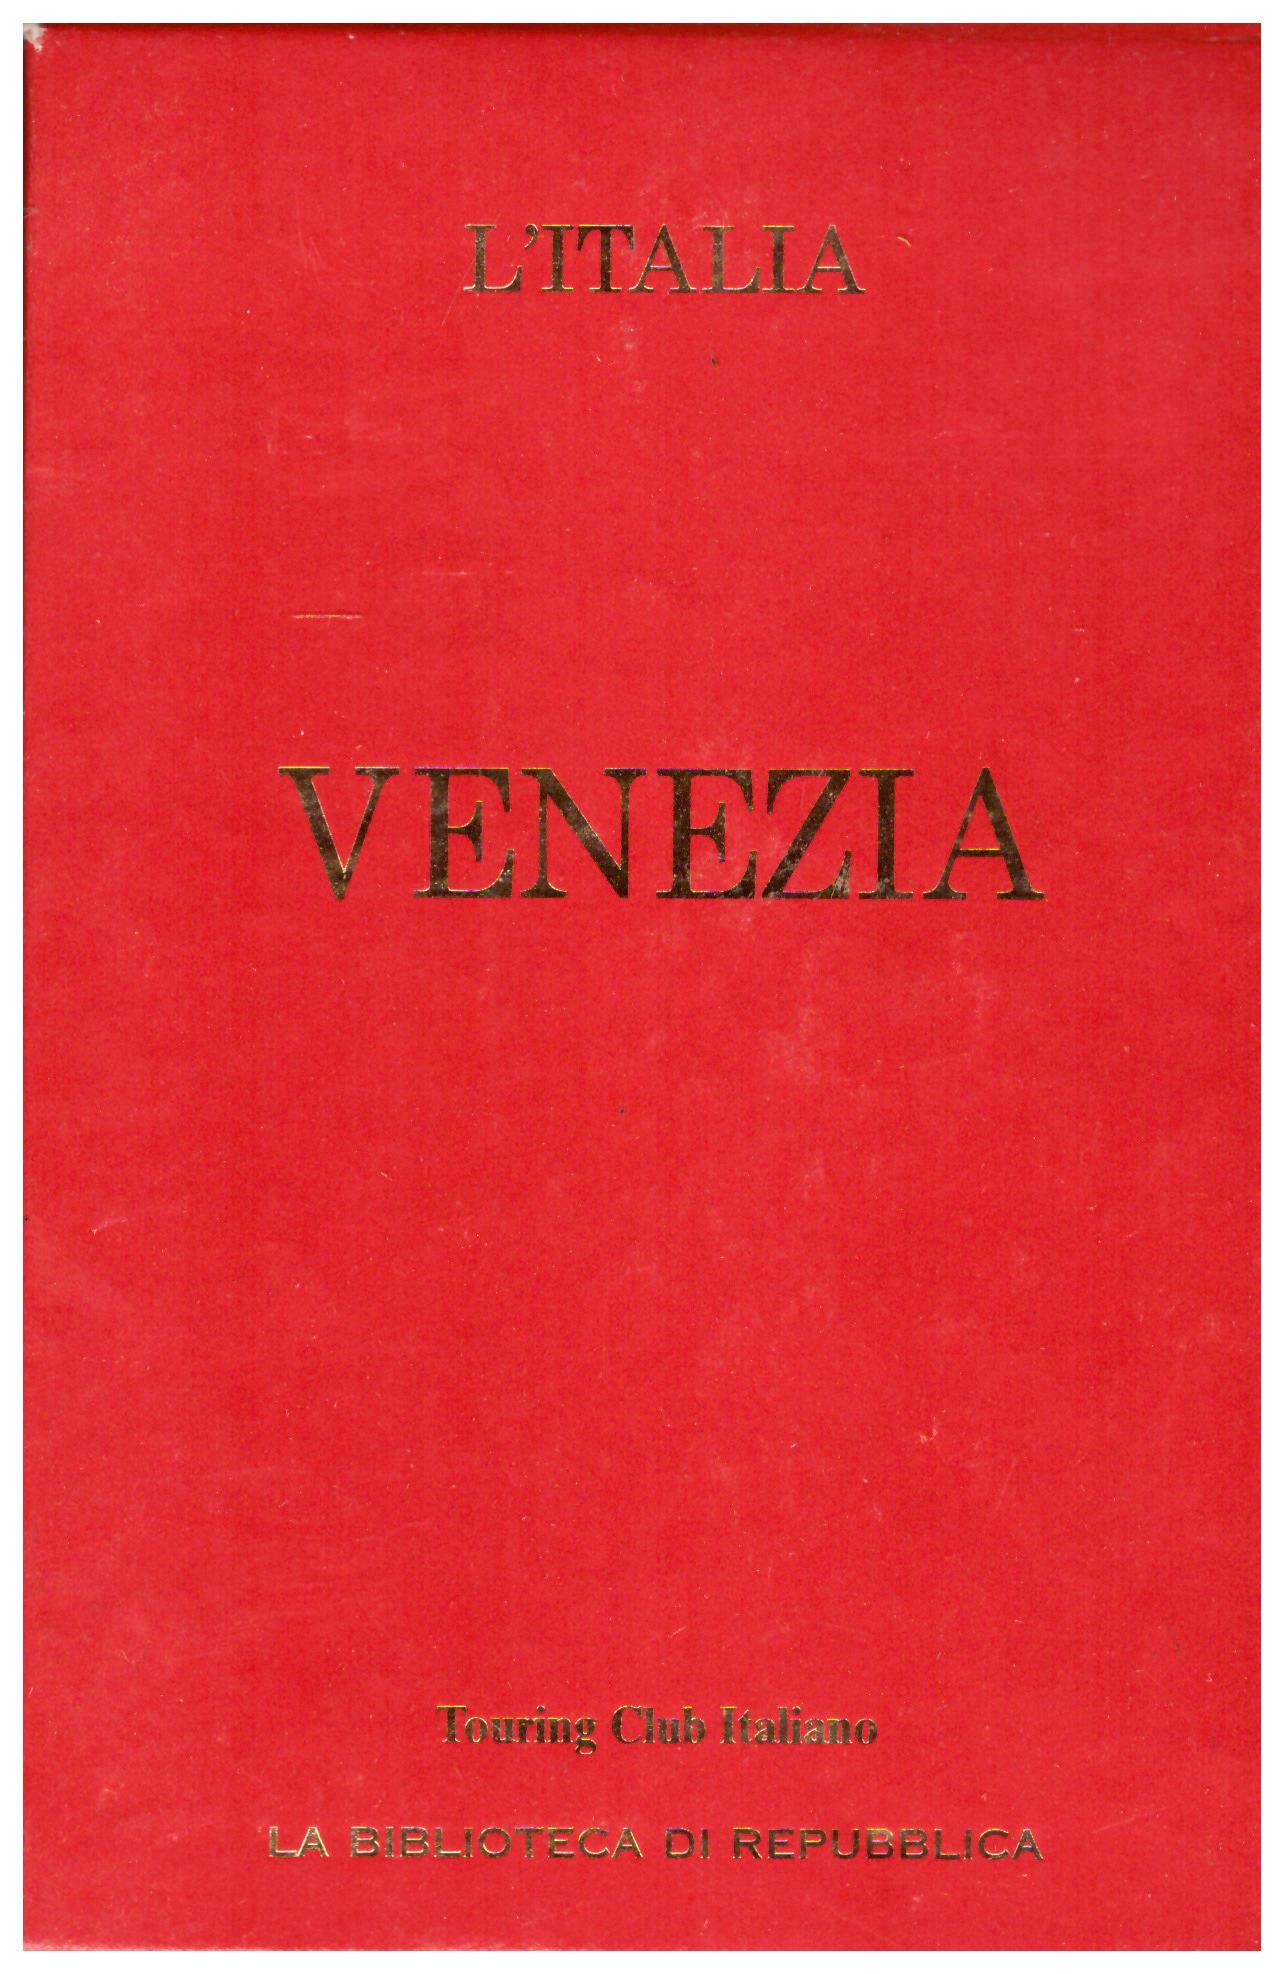 Titolo: L'Italia, Venezia    Autore: AA.VV.     Editore: touring club italiano, la biblioteca di Repubblica